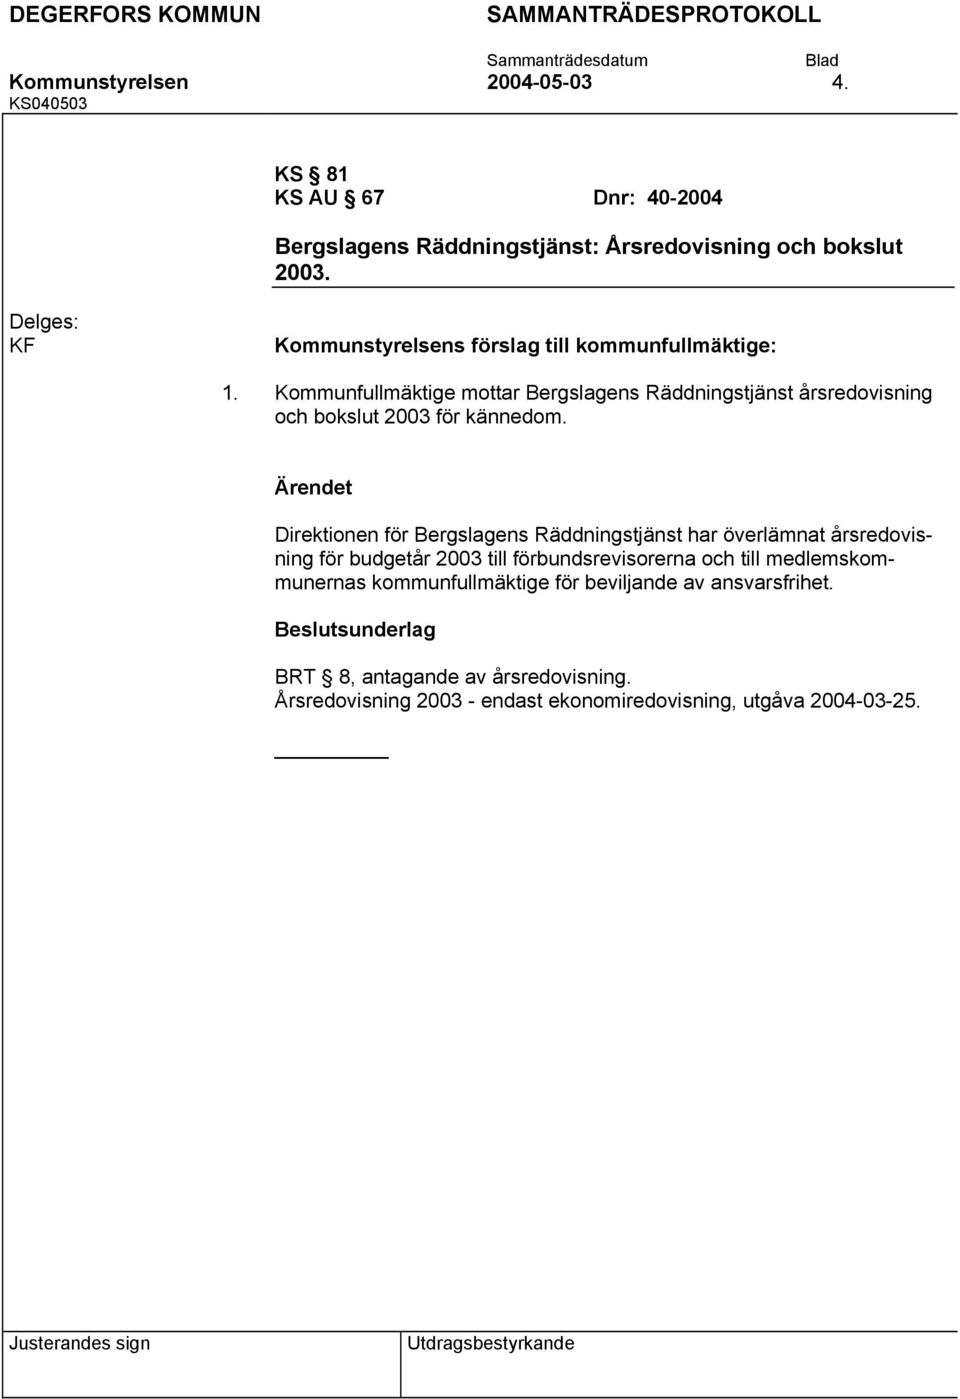 Kommunfullmäktige mottar Bergslagens Räddningstjänst årsredovisning och bokslut 2003 för kännedom.